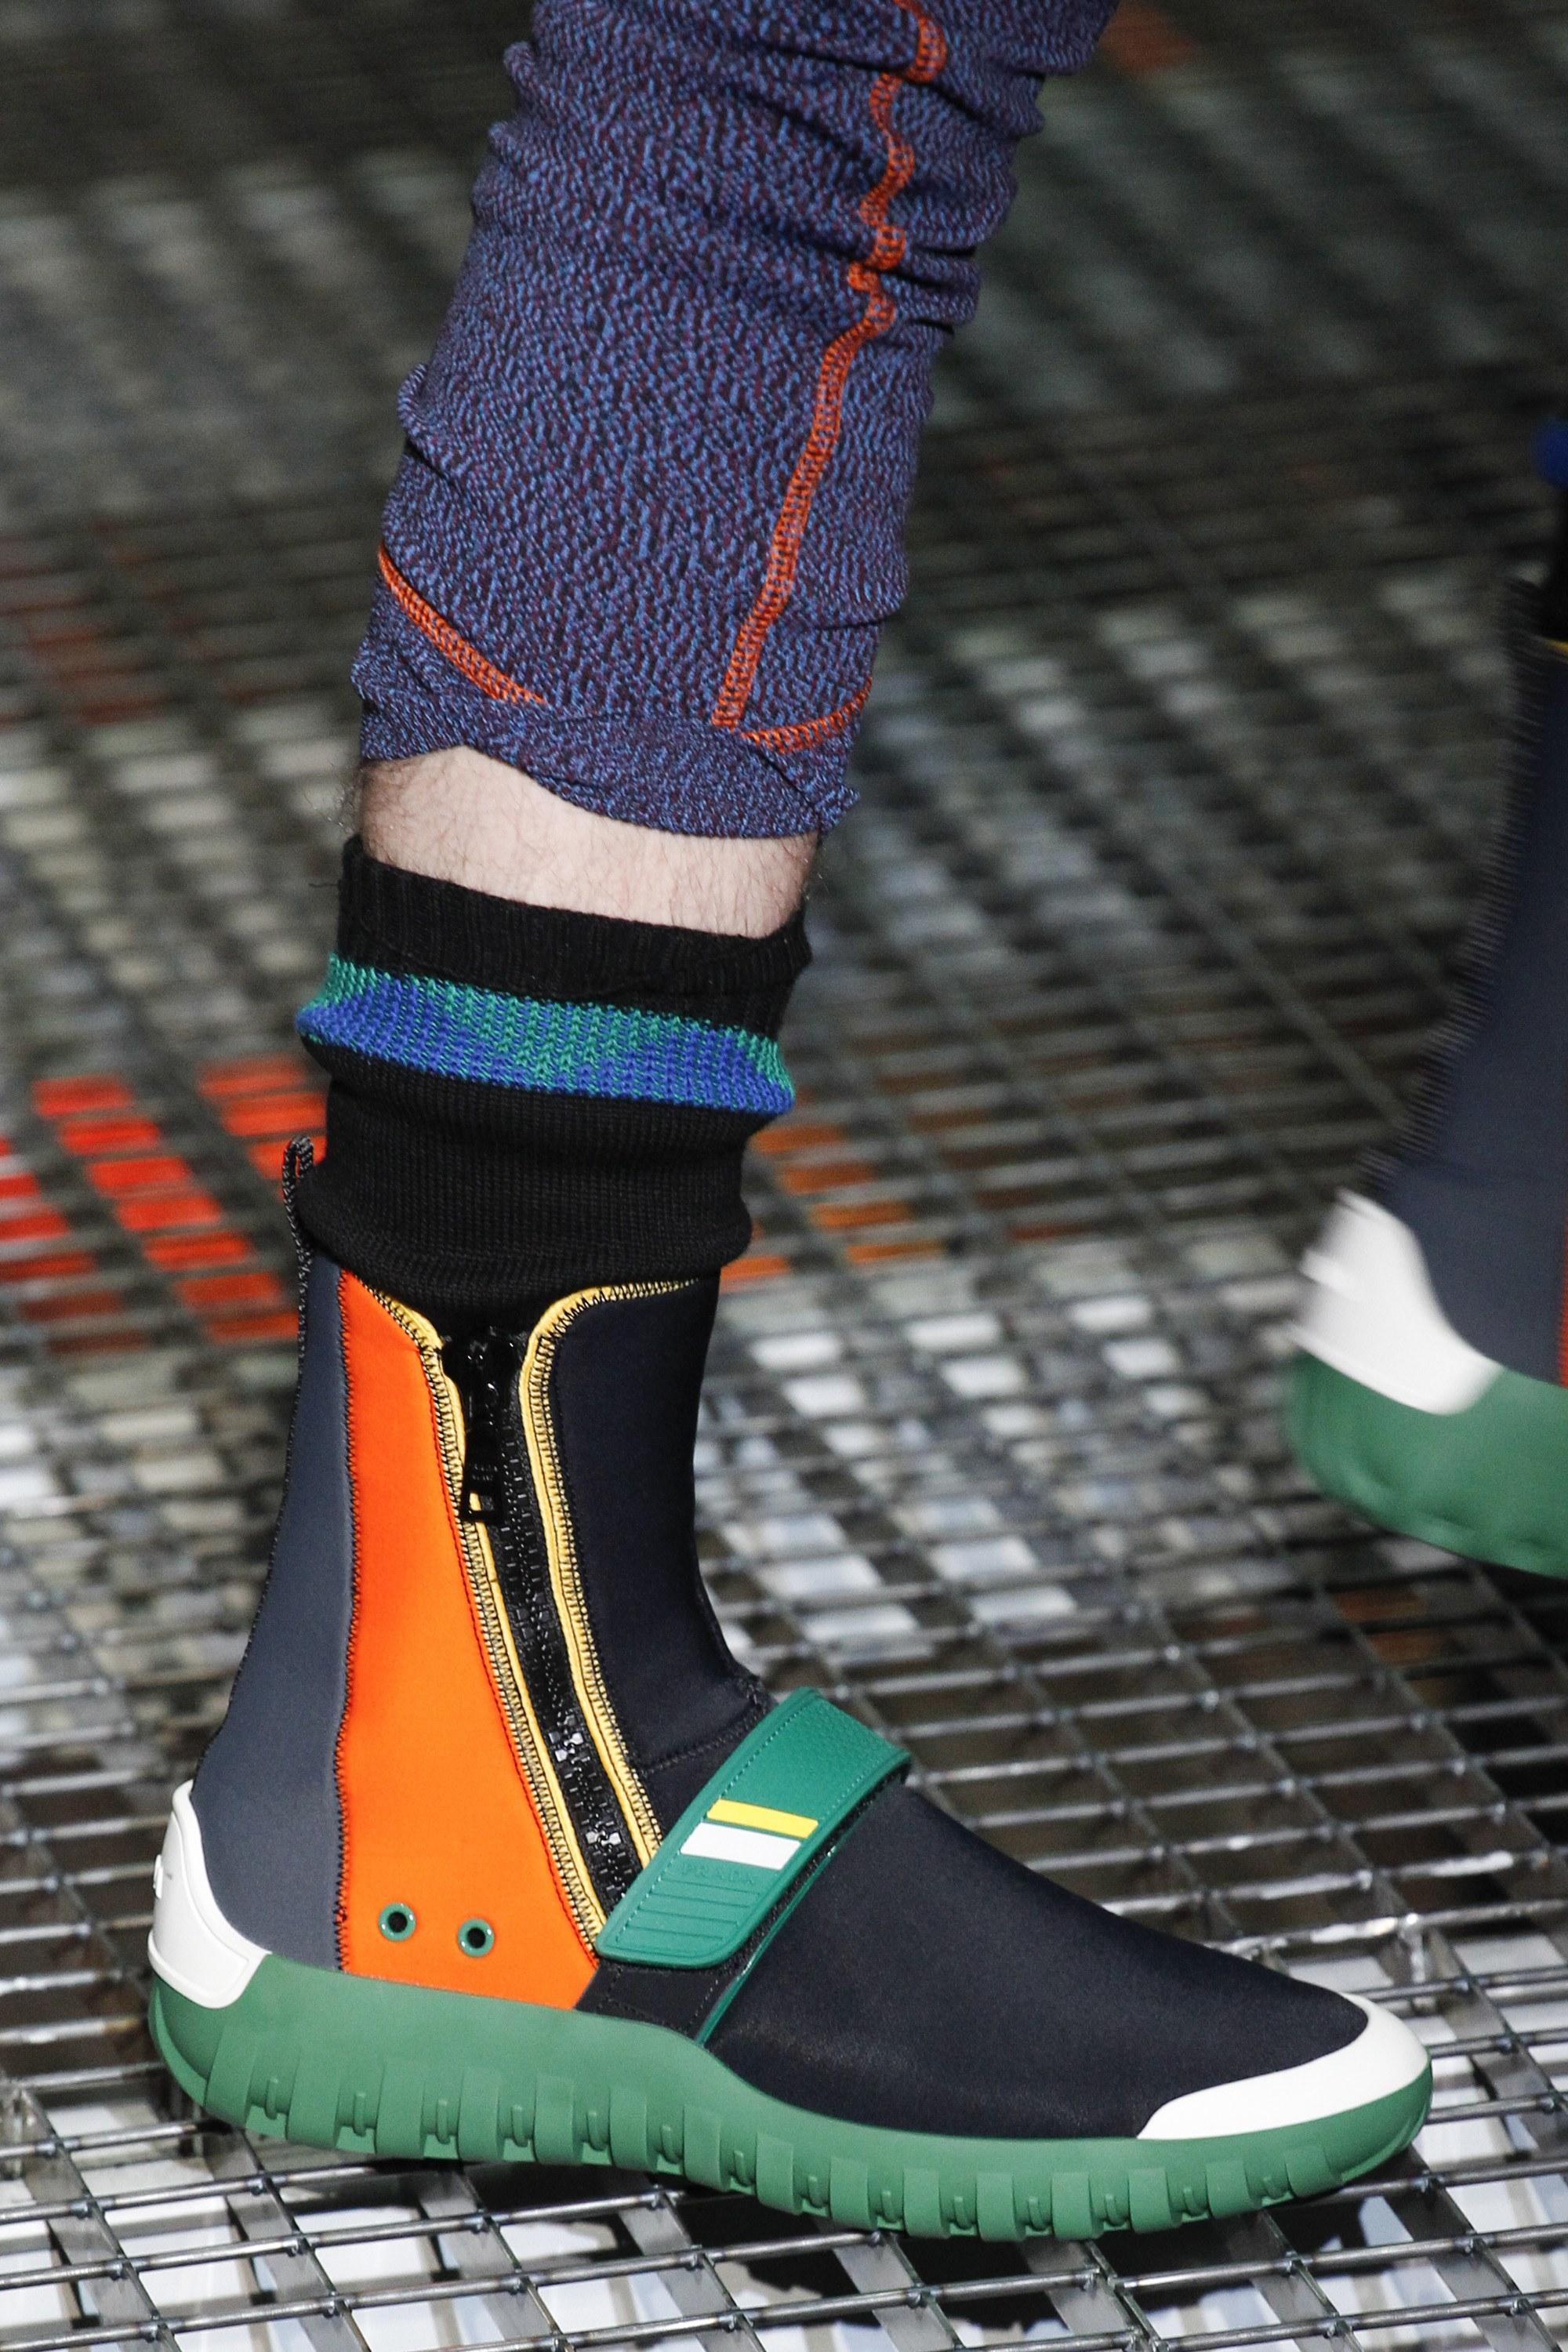 12. Prada da çorap gibi giyilen spor ayakkabıların çağında olduğumuzu gösteren markalar arasında.